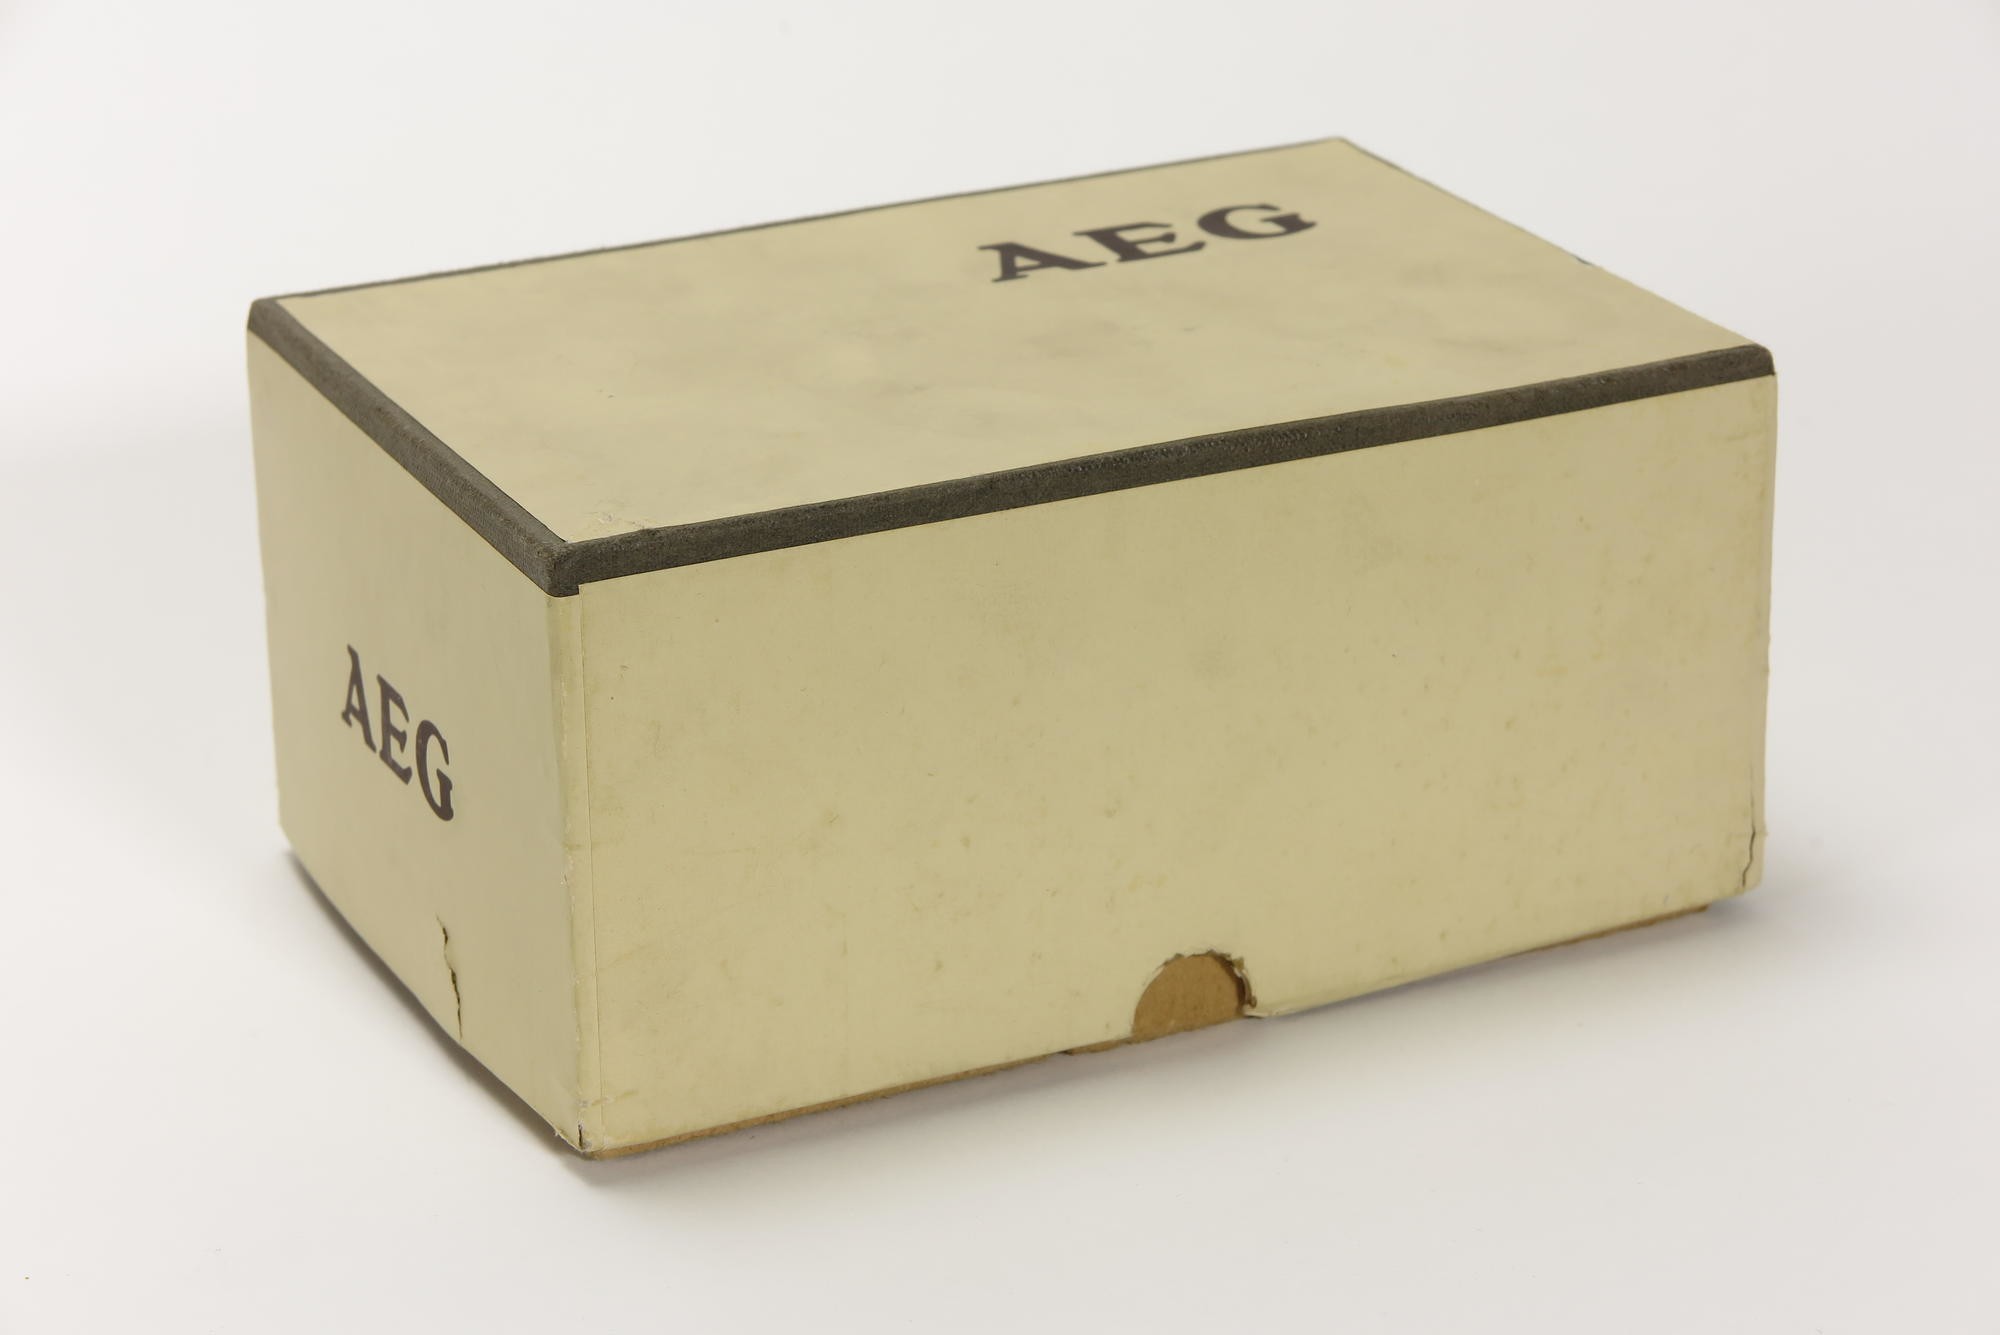 Verpackungskarton, Zubehör zu Elektrisches Reise-Bügeleisen AEG (Stiftung Deutsches Technikmuseum Berlin CC0)